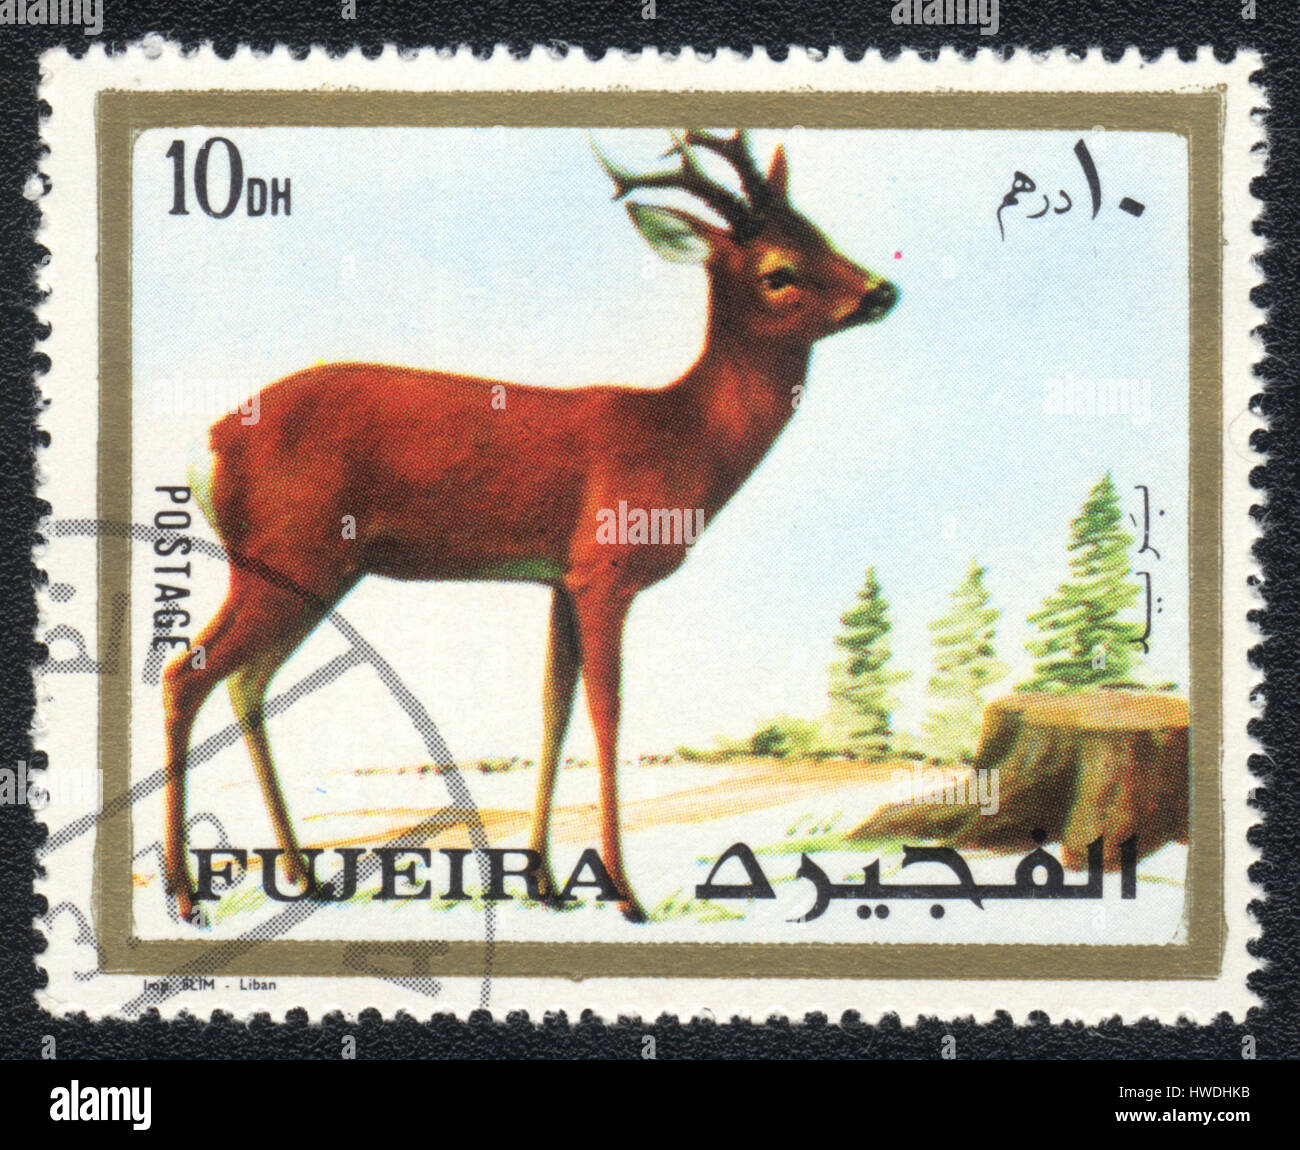 Un timbre-poste imprimé en Fujairah et montre un chevreuil , vers 1973 Banque D'Images